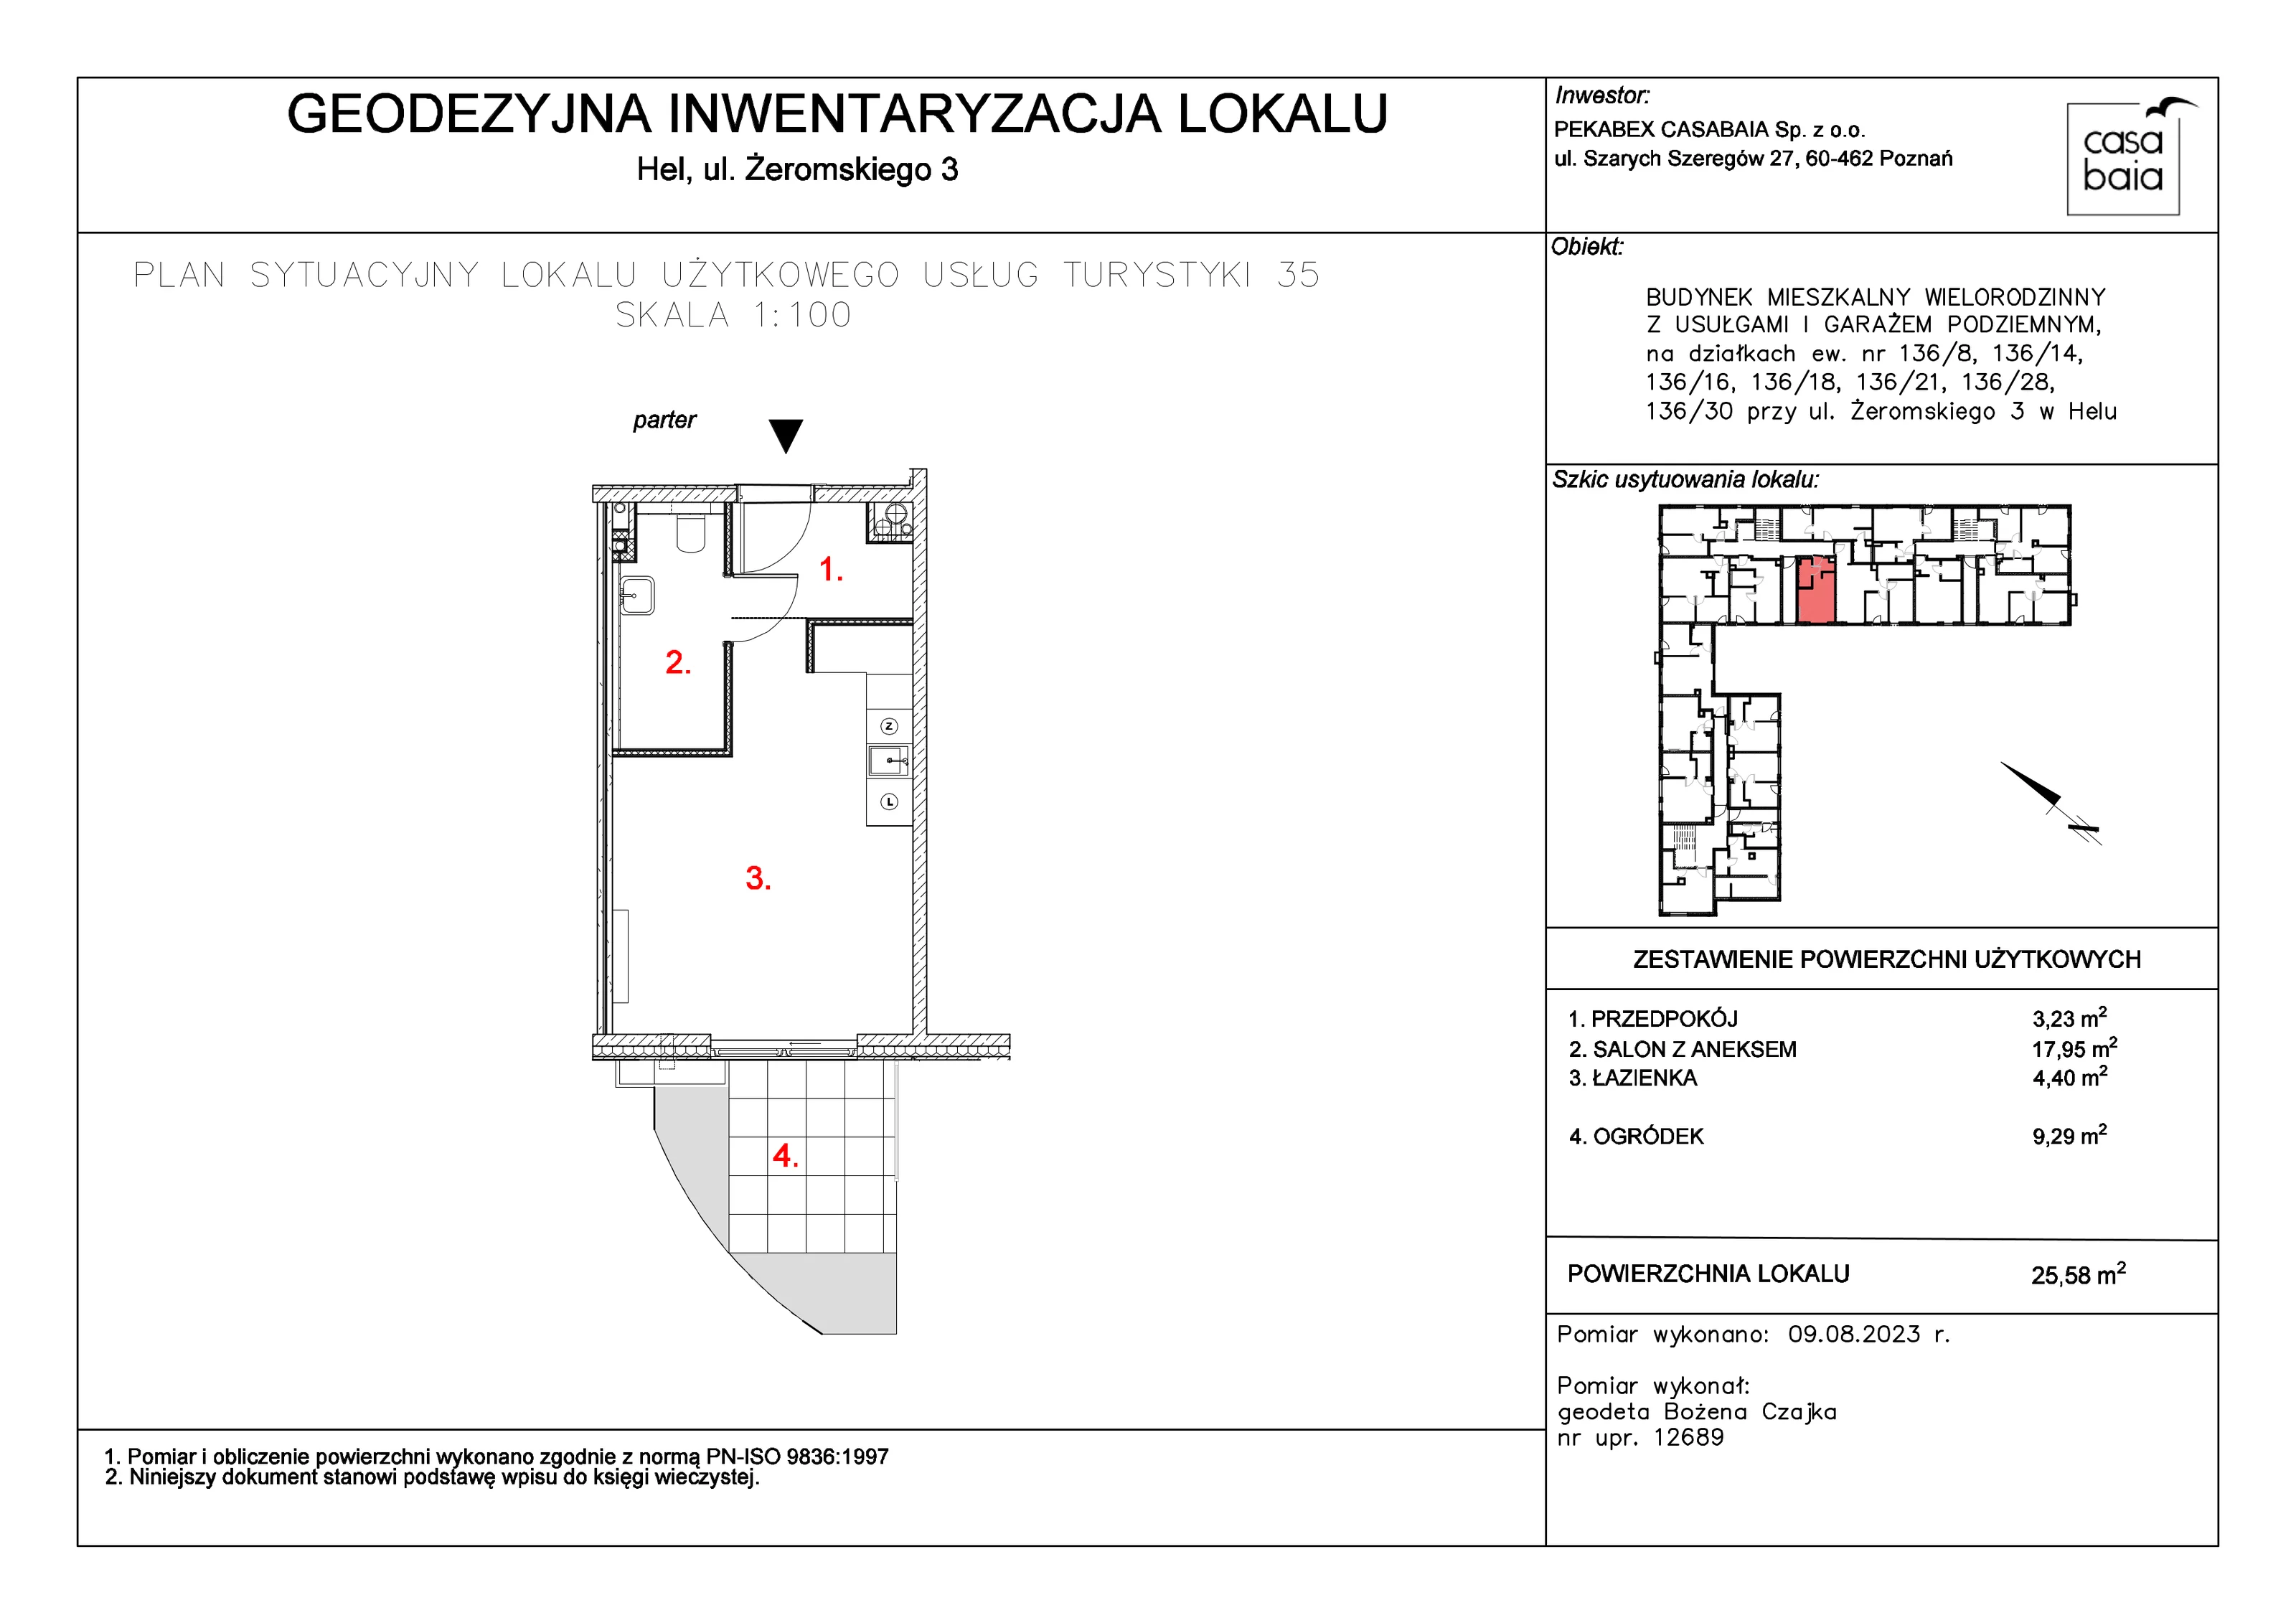 Mieszkanie 25,58 m², parter, oferta nr G1, CASA BAIA, Hel, ul. Stefana Żeromskiego 3